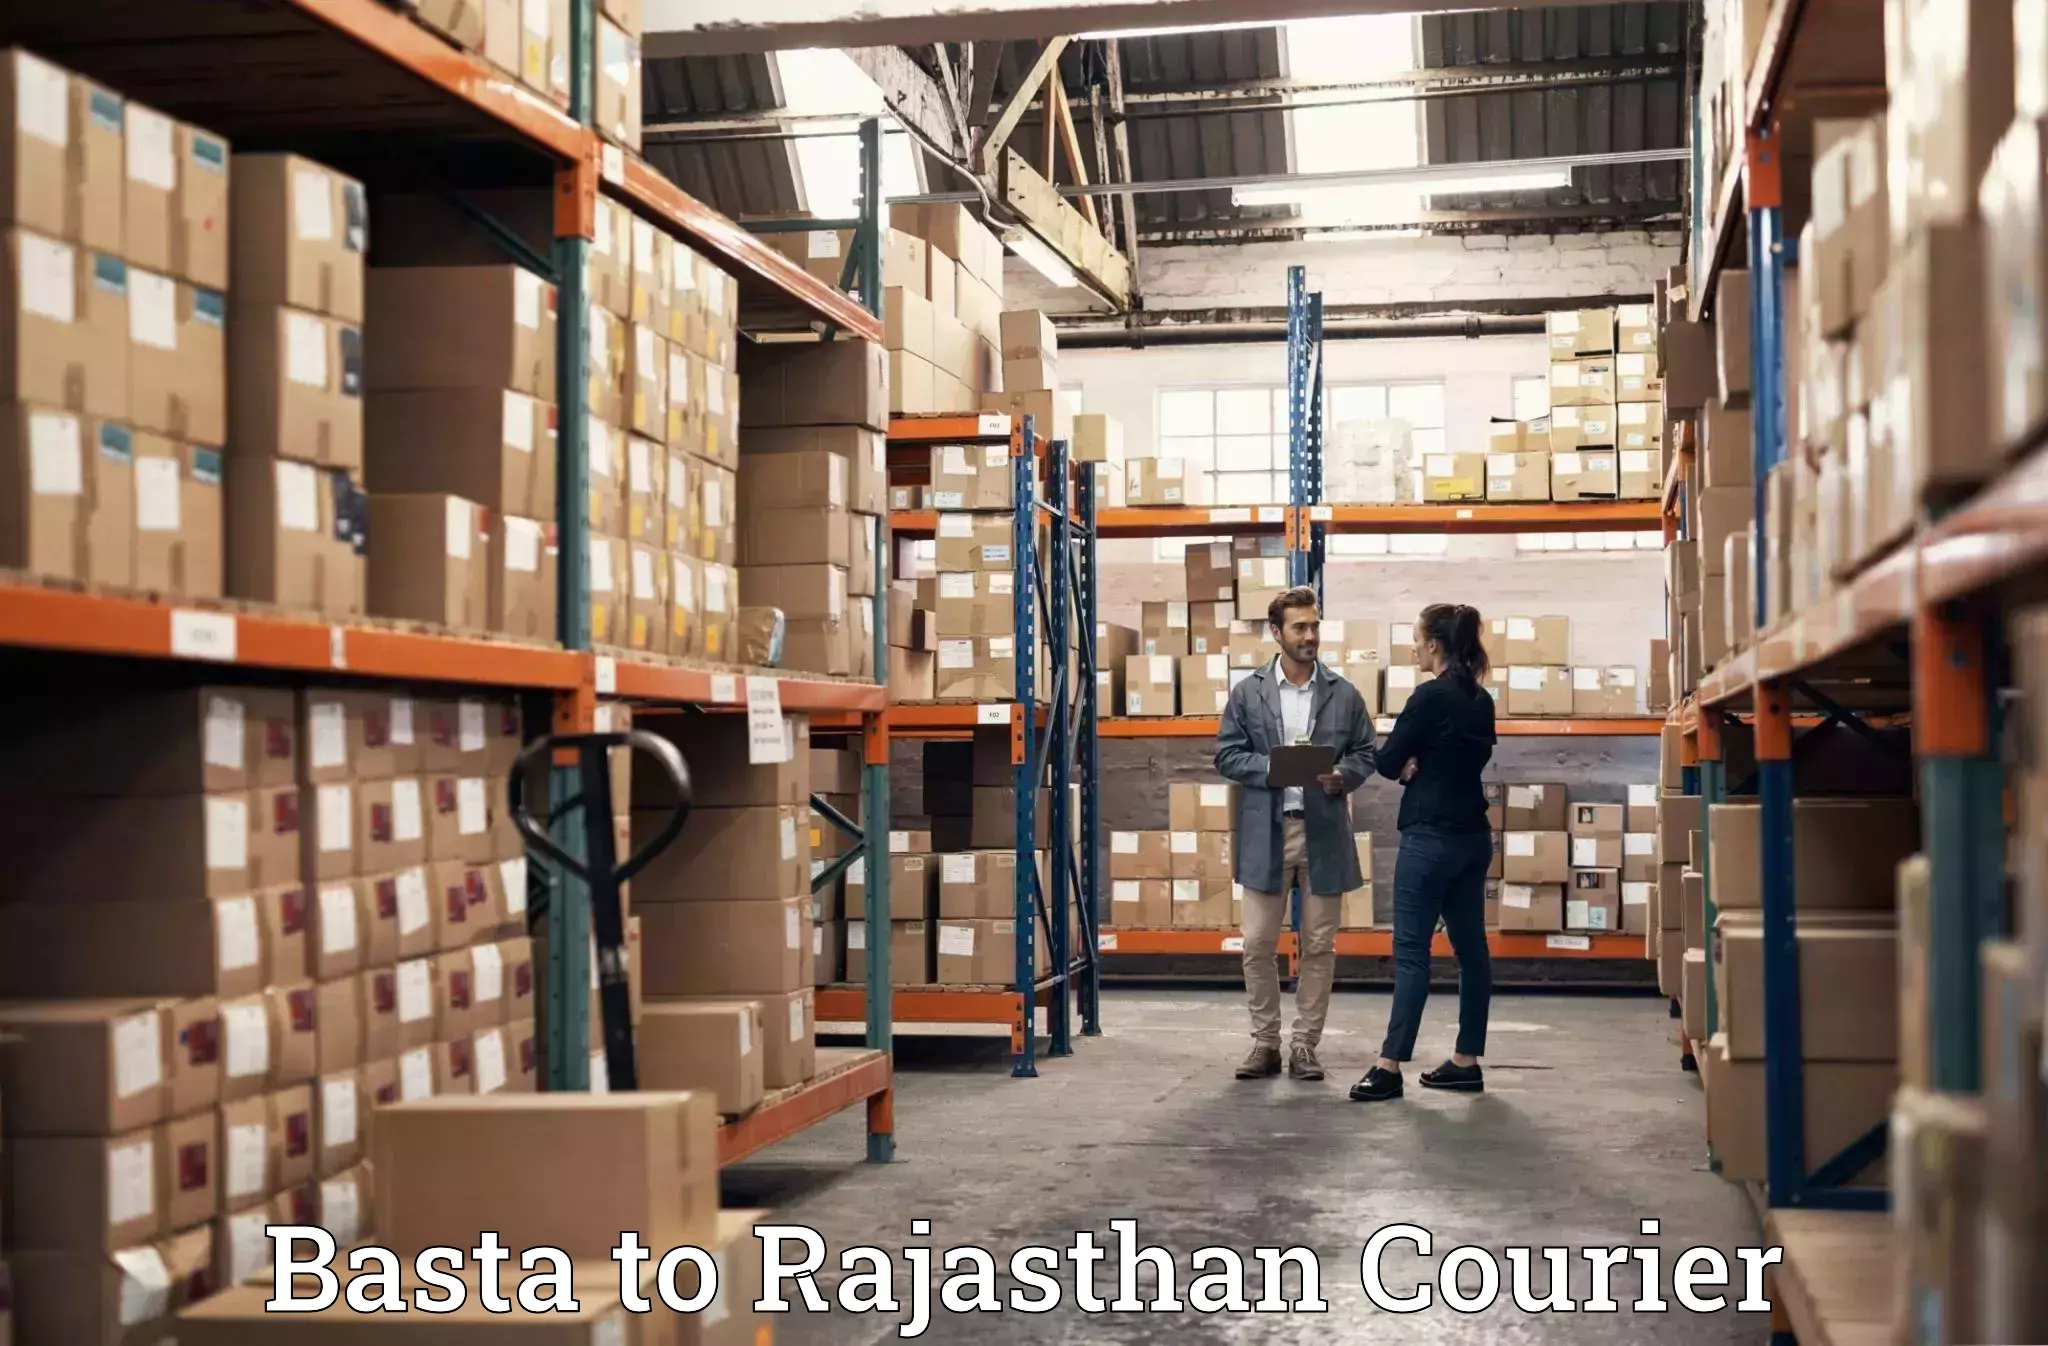 Moving and handling services Basta to Banswara